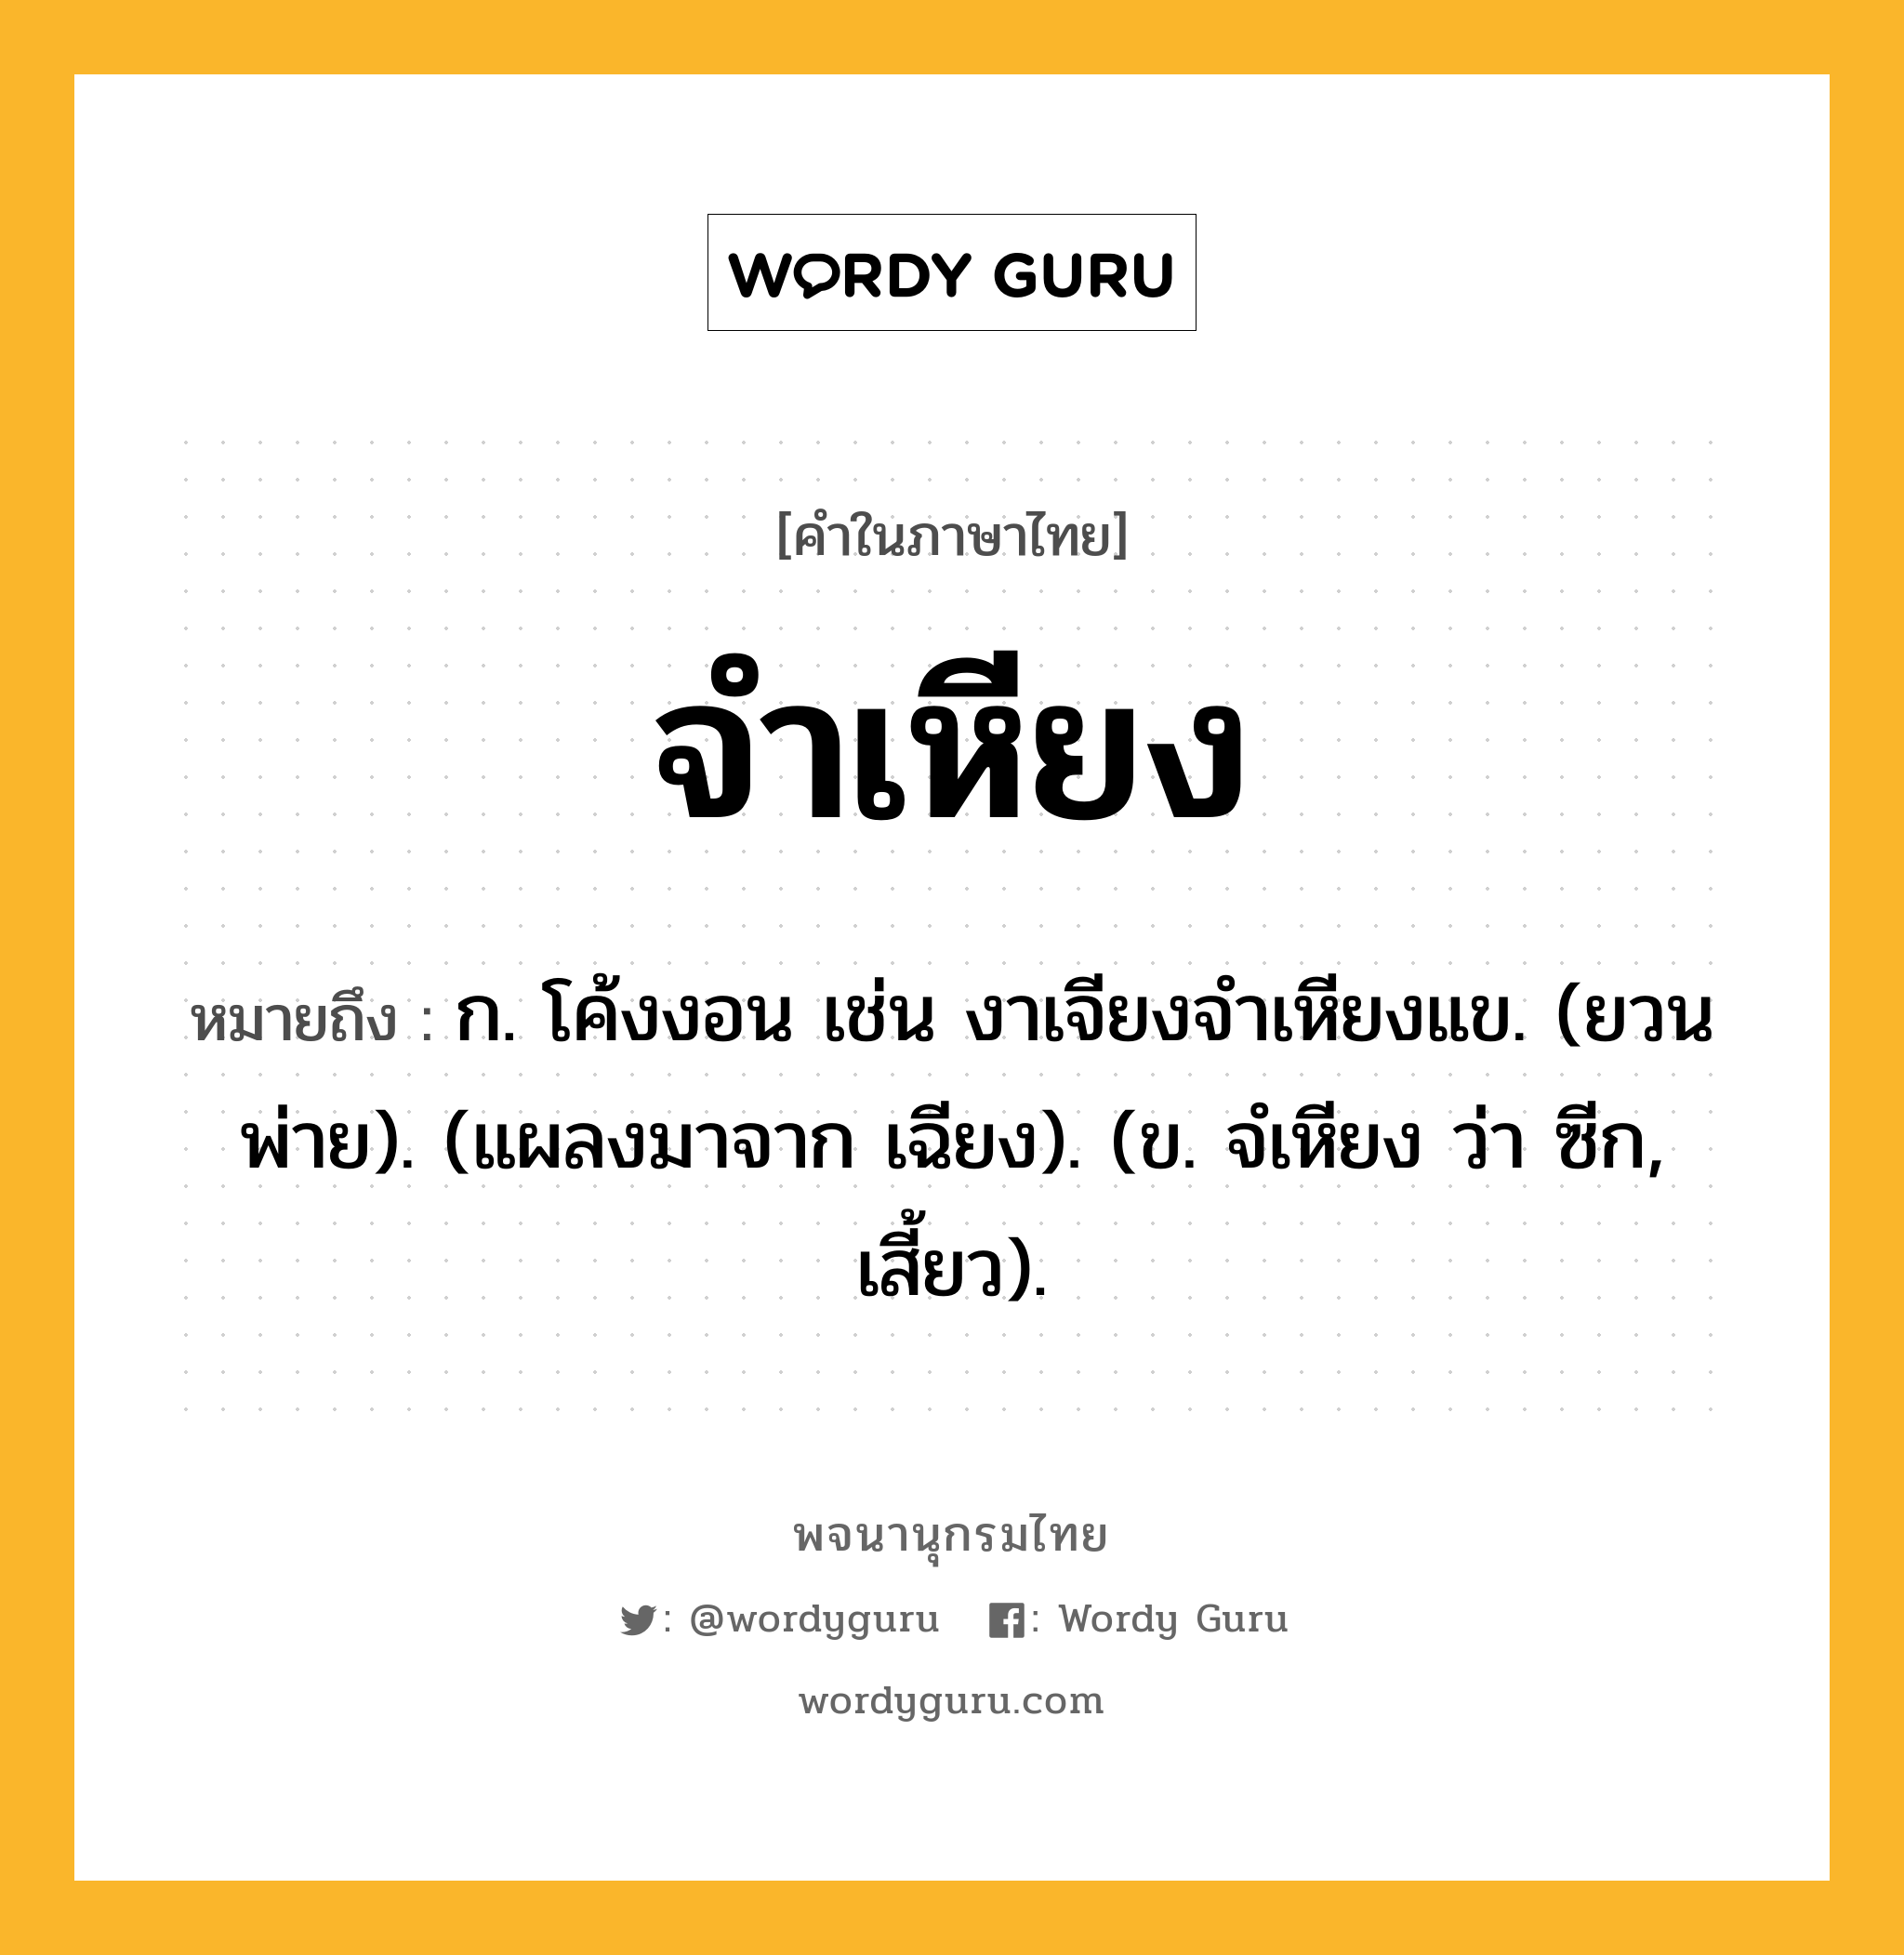 จำเหียง ความหมาย หมายถึงอะไร?, คำในภาษาไทย จำเหียง หมายถึง ก. โค้งงอน เช่น งาเจียงจําเหียงแข. (ยวนพ่าย). (แผลงมาจาก เฉียง). (ข. จํเหียง ว่า ซีก, เสี้ยว).